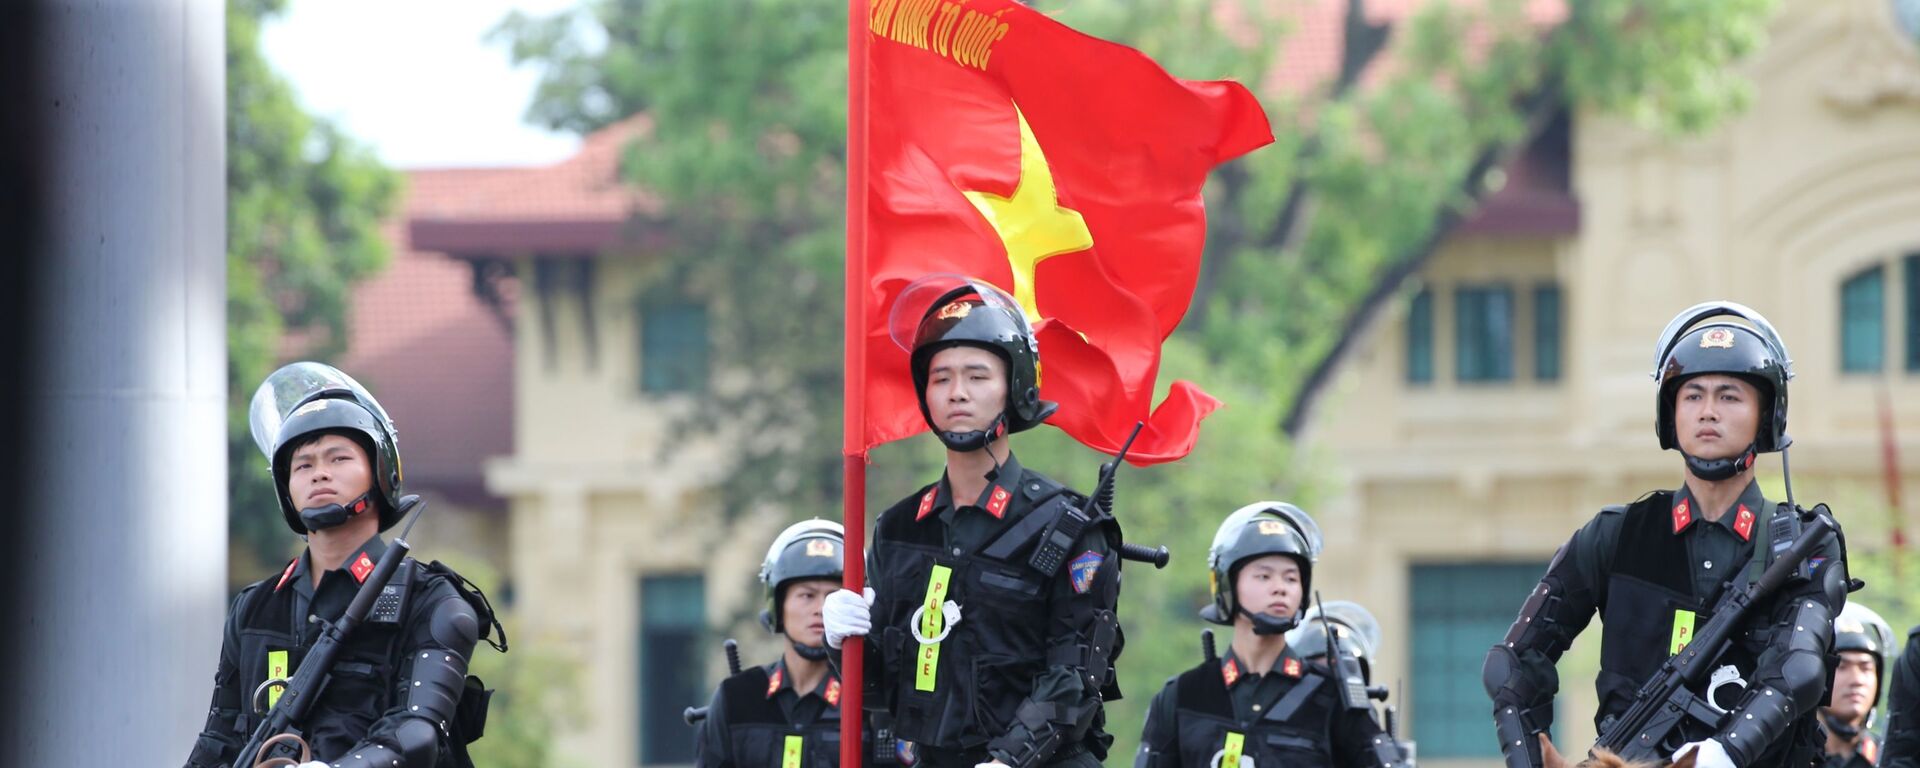 Lực lượng Cảnh sát cơ động kỵ binh diễu hành. - Sputnik Việt Nam, 1920, 08.06.2020